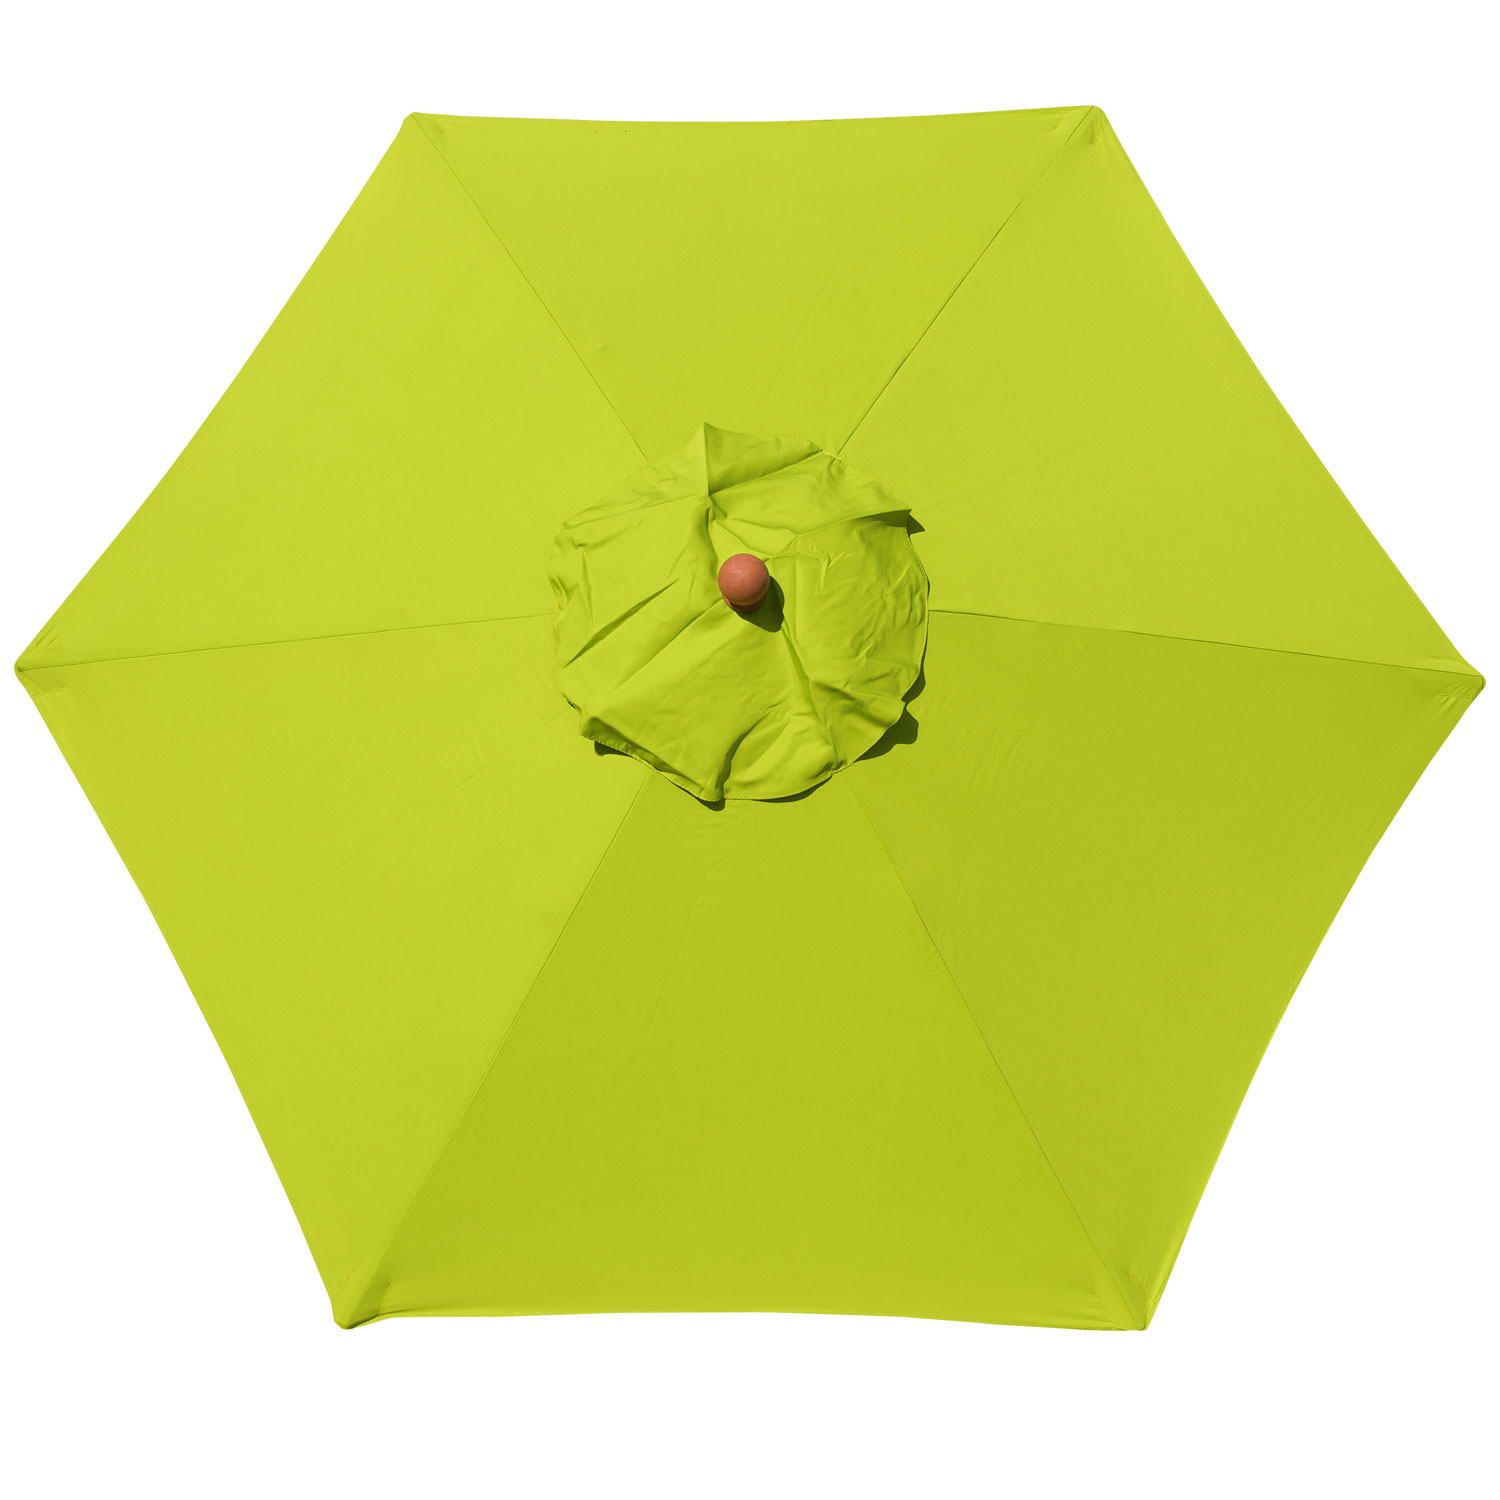 anndora Sonnenschirm 2m rund Apfelgrün Limette Winddach UV-Schutz - 4